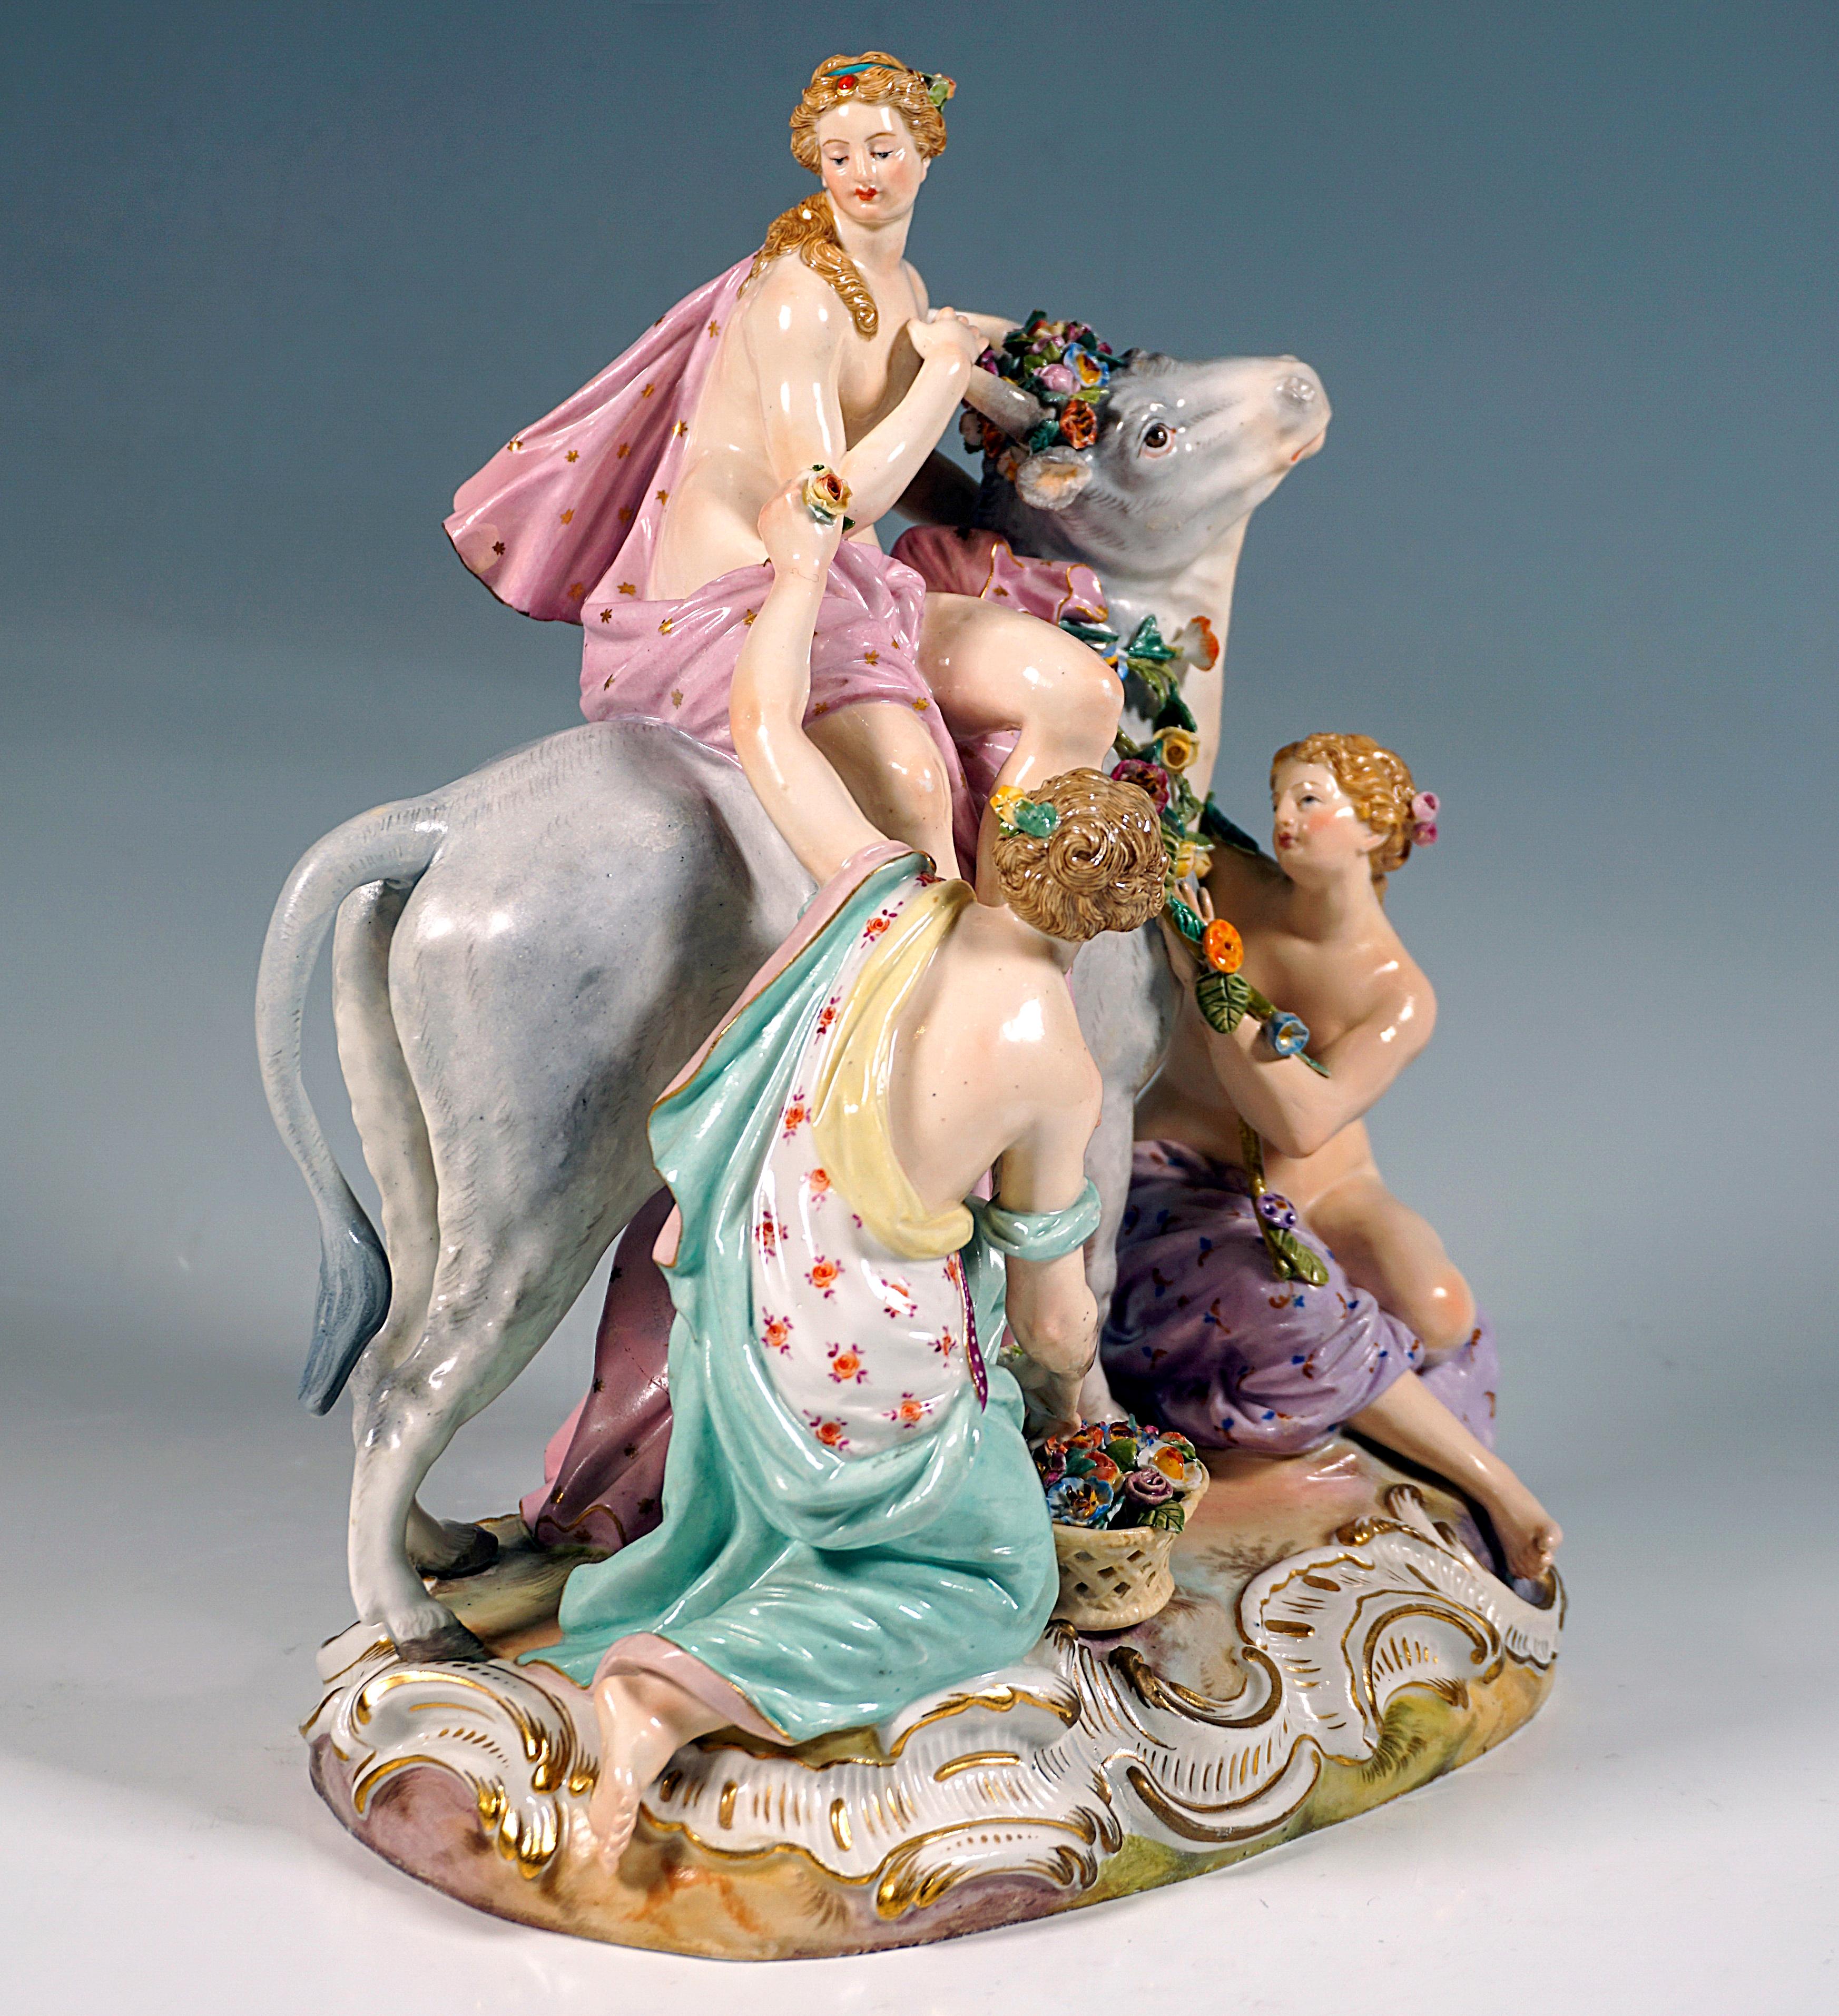 Excellent grand groupe de figurines Meissen Vers 1860 :
La belle et jeune Europe, mère primordiale du continent, les cheveux attachés et ornés de fleurs, est assise de profil sur le taureau blanc et fort, qui est en fait le père transformé du dieu